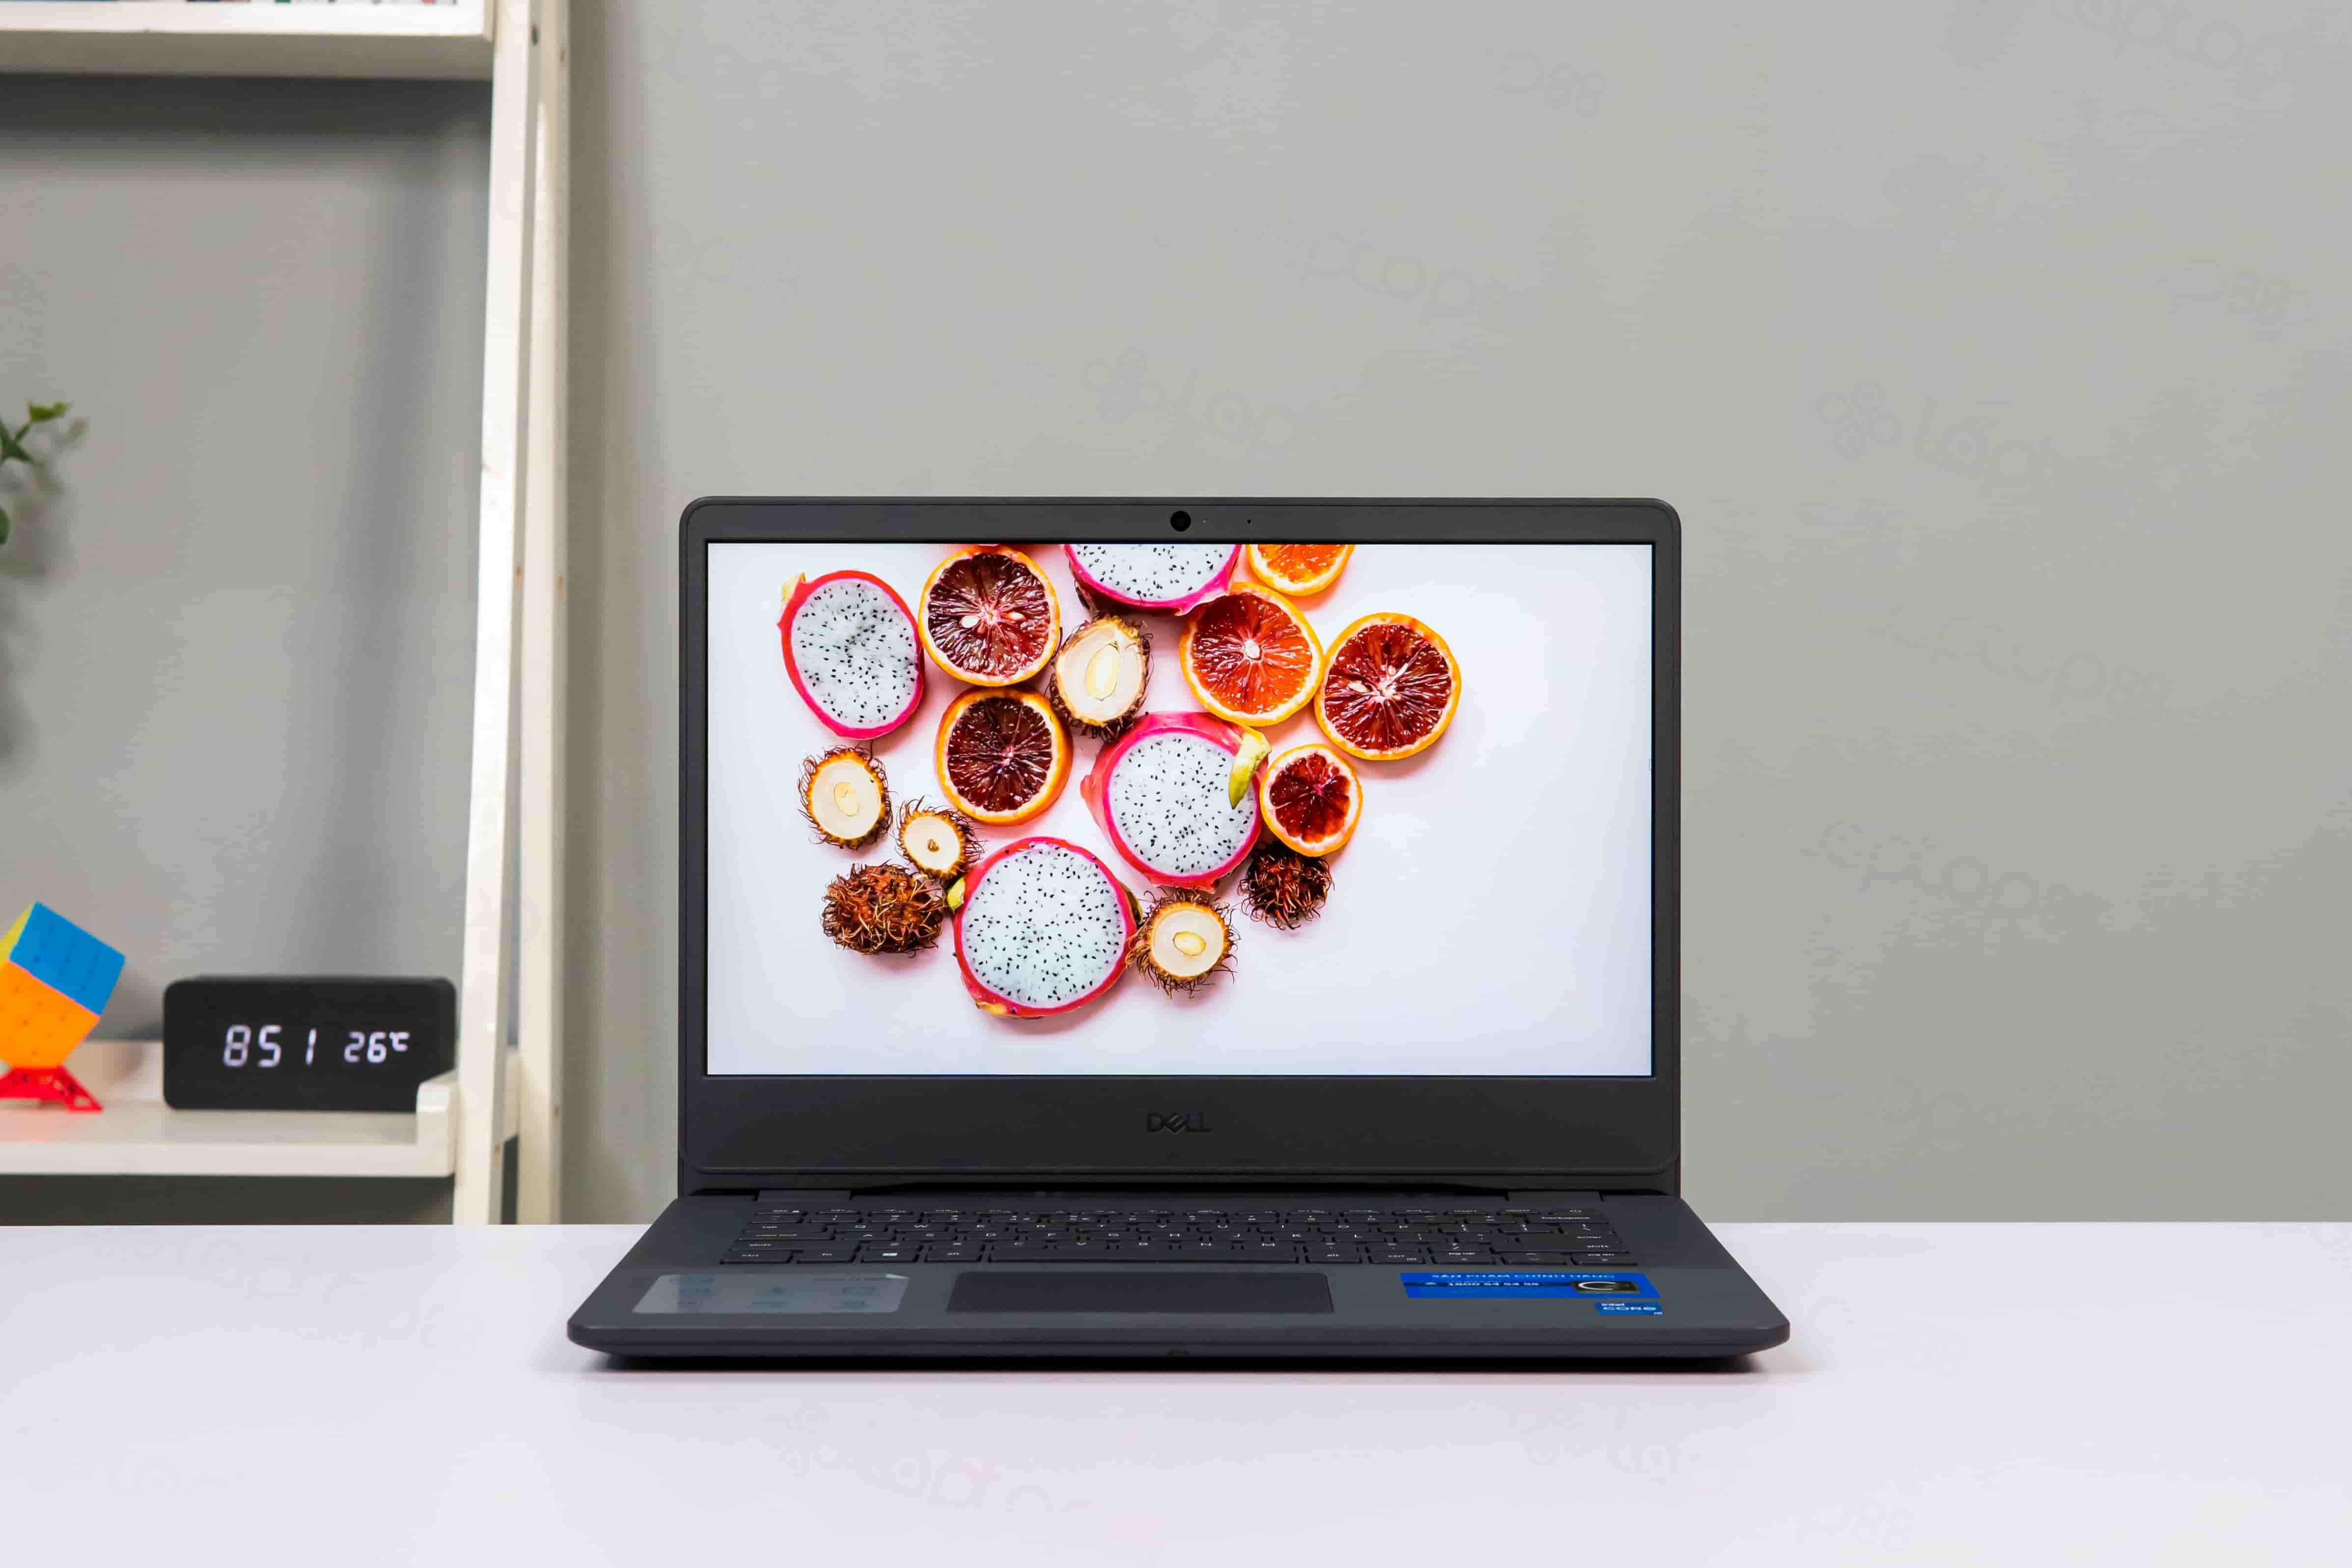 Đánh giá laptop Dell core i3 14 inch giá rẻ - siêu bền, hiệu năng cực ổn định